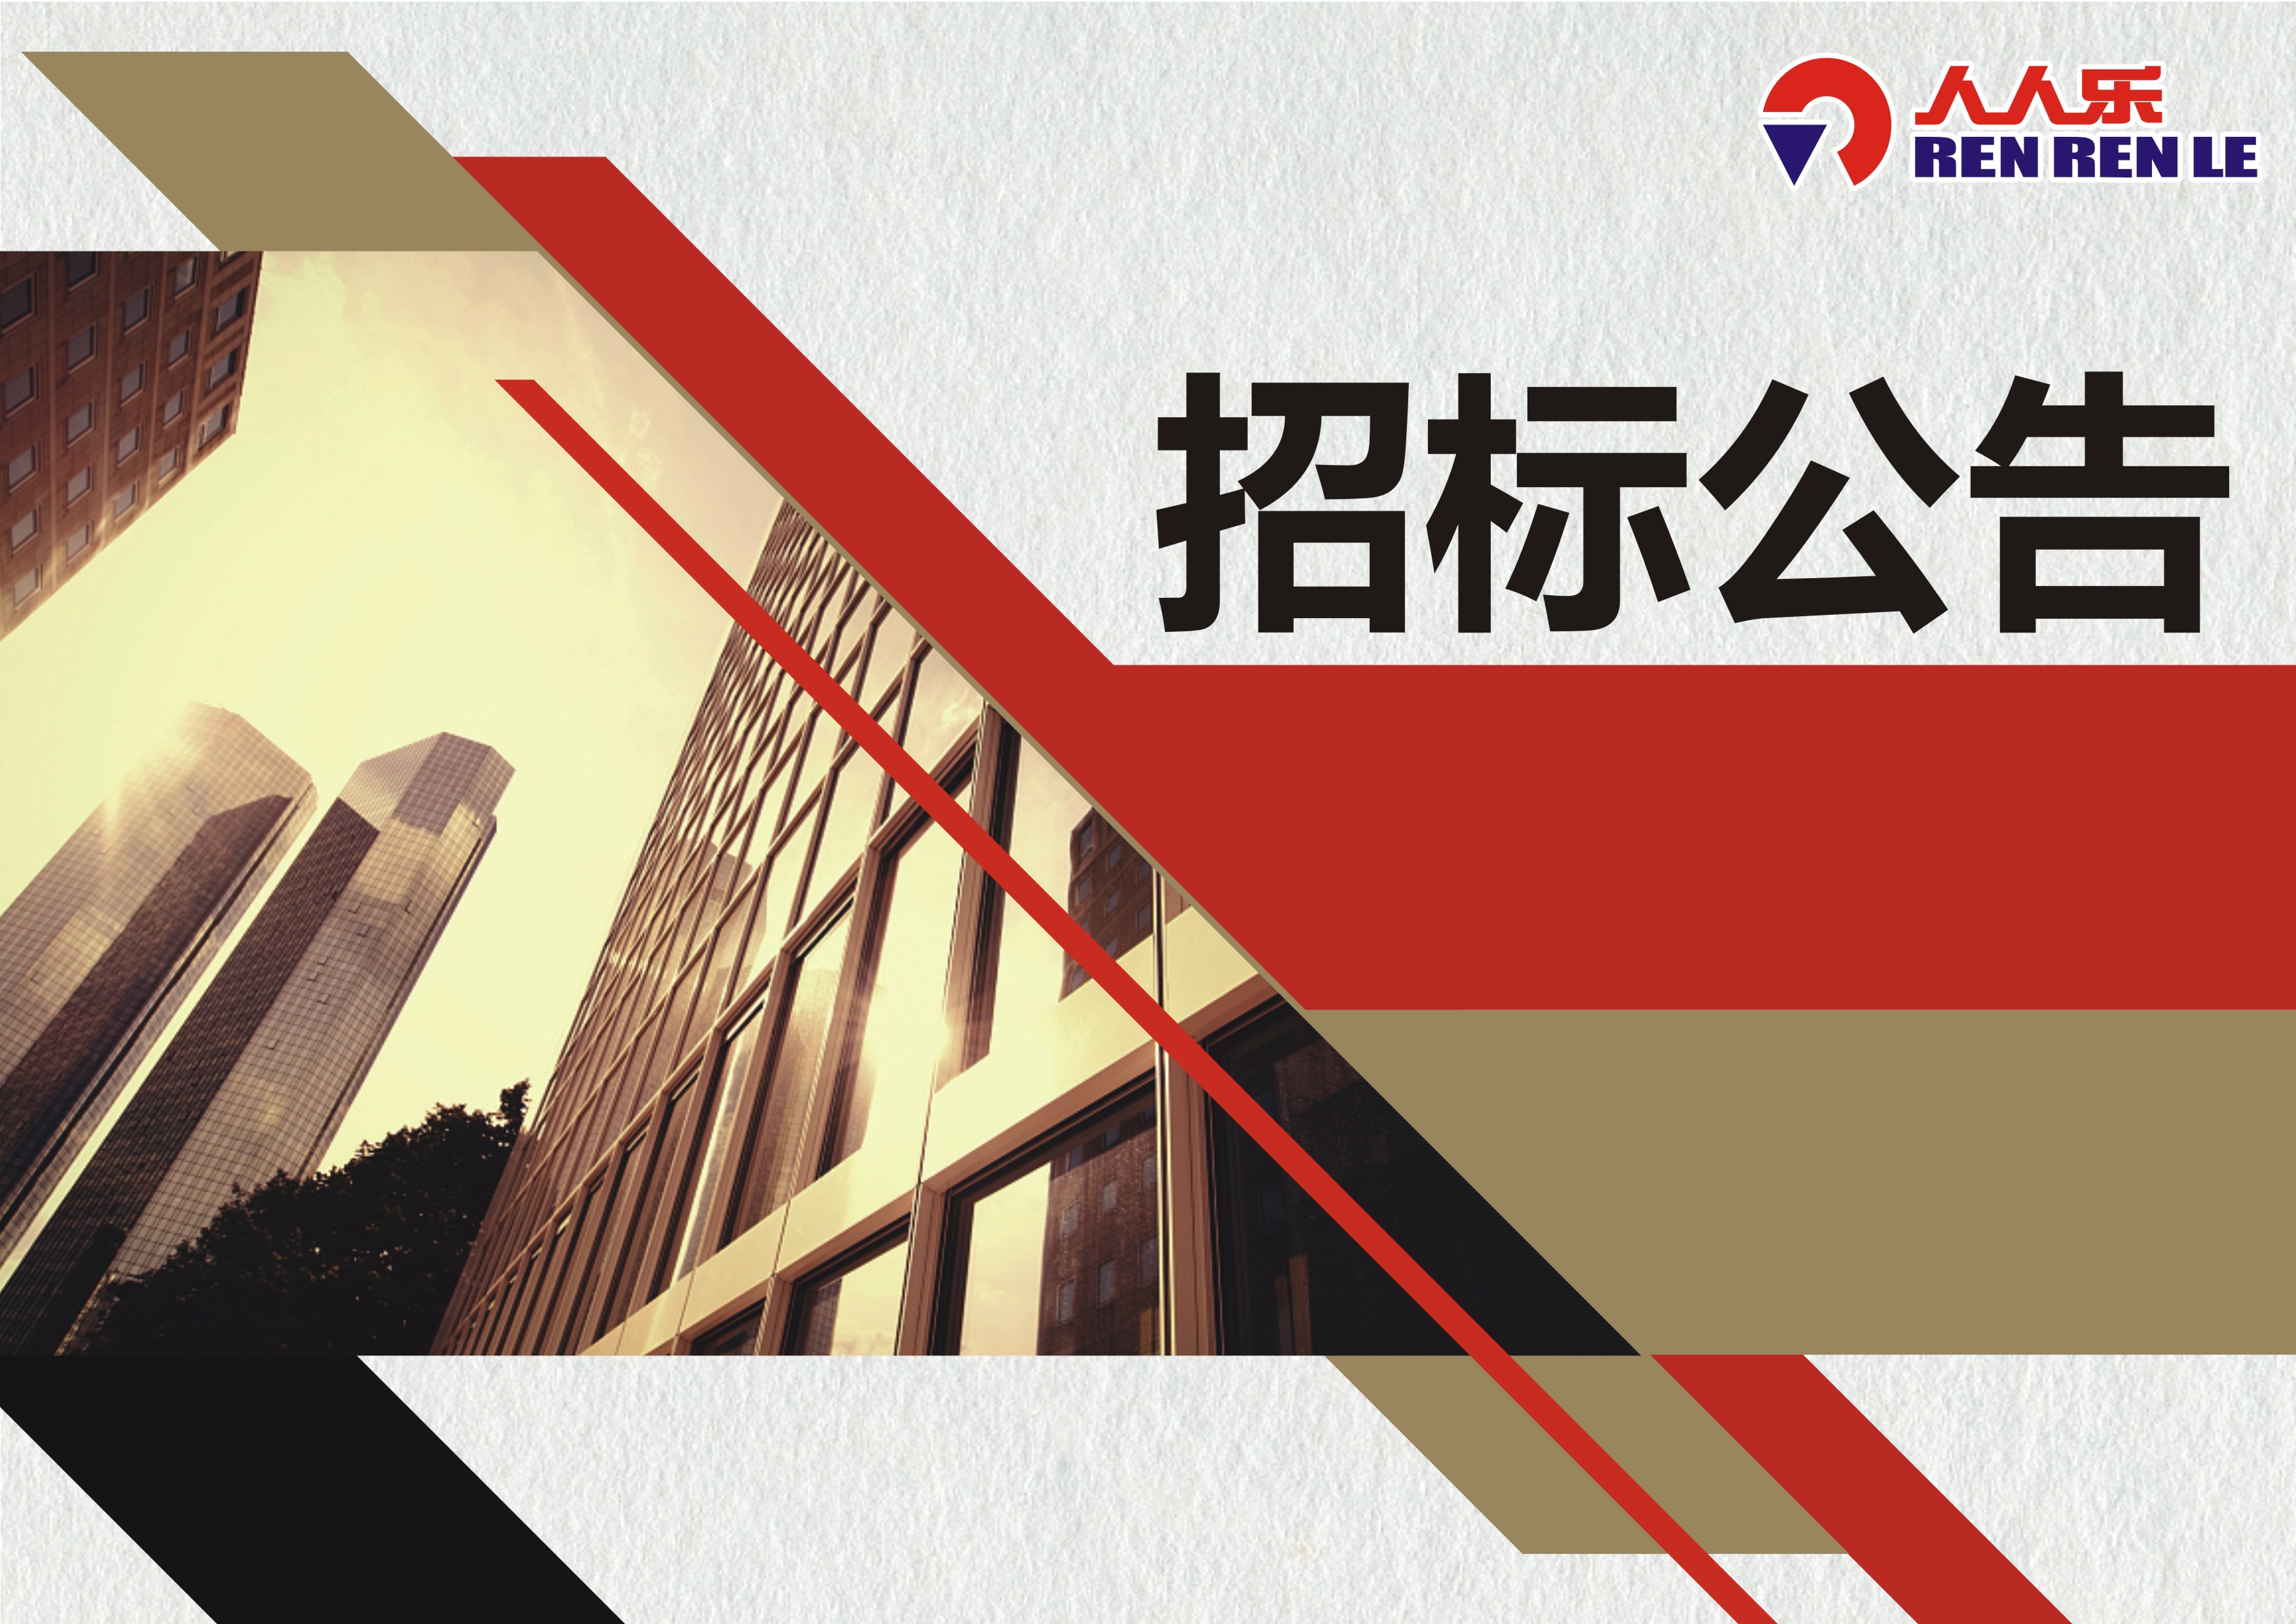 深圳市人人乐商业有限公司建筑消防设施、电气消防安全检测项目招标公告